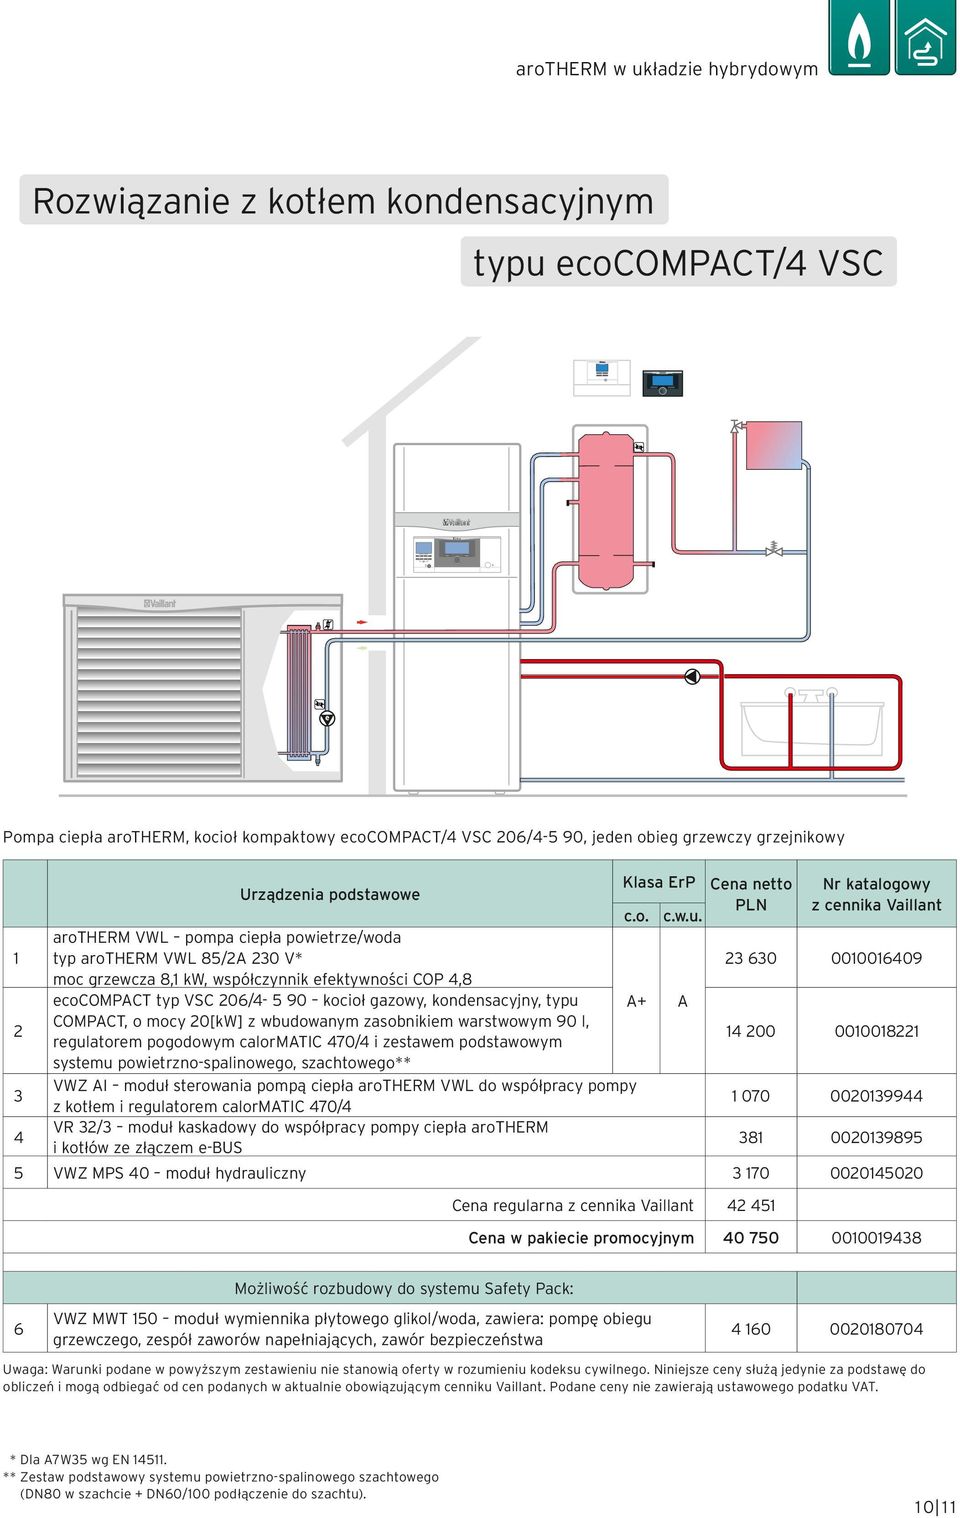 arotherm VWL pompa ciepła powietrze/woda typ arotherm VWL 85/2A 230 V* moc grzewcza 8,1 kw, współczynnik efektywności COP 4,8 ecocompact typ VSC 206/4-5 90 kocioł gazowy, kondensacyjny, typu A+ A